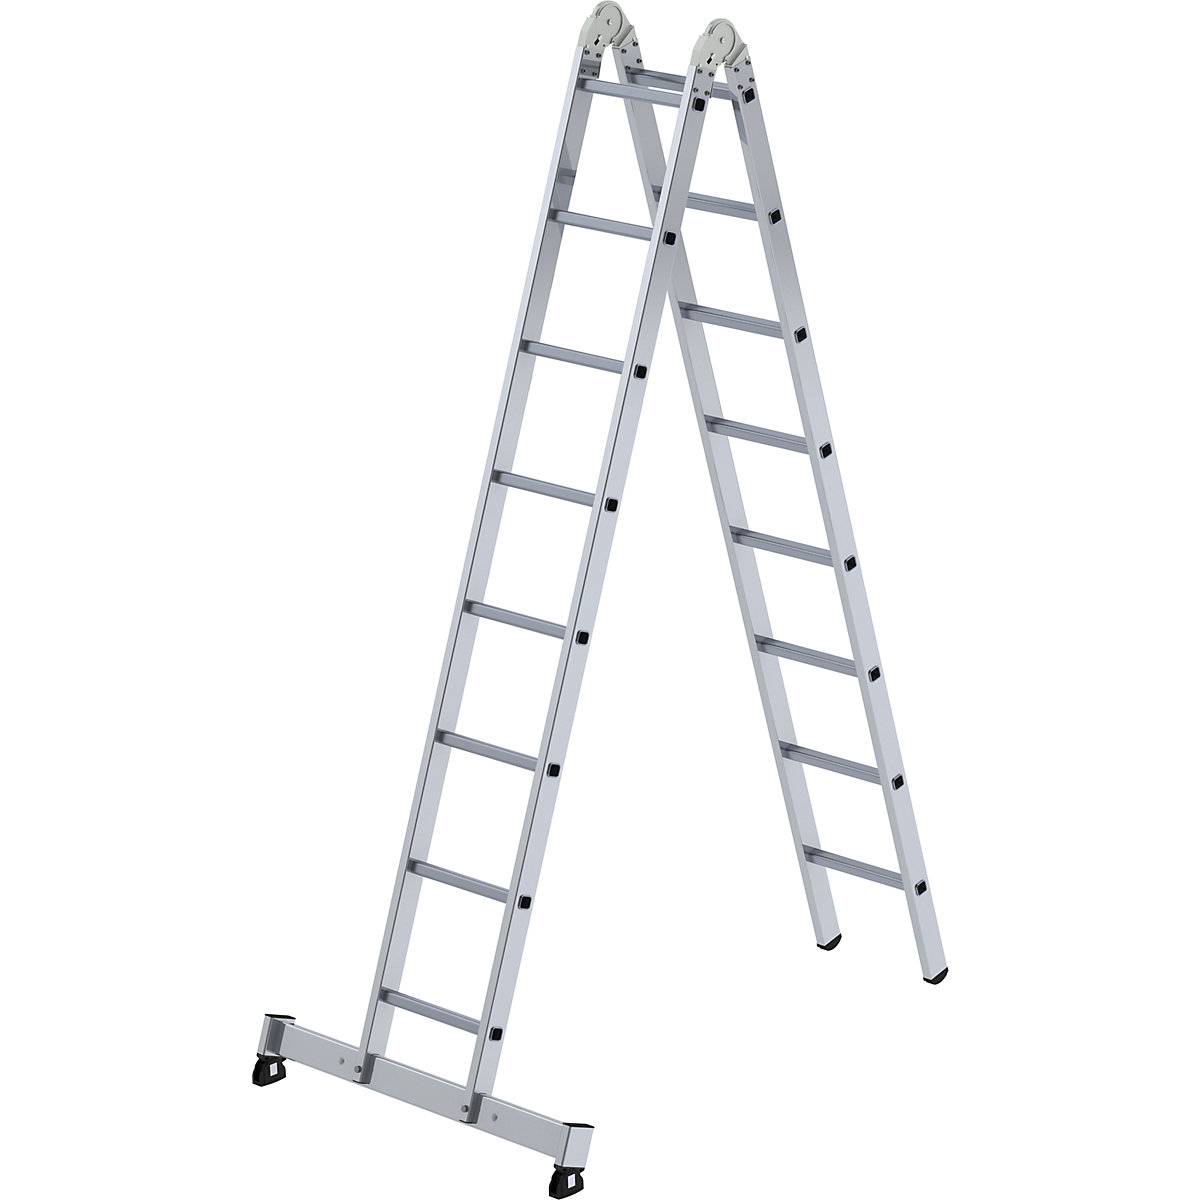 MUNK – Escada articulada em alumínio, utilizável como escada de encosto e escada dupla, 2 x 8 degraus